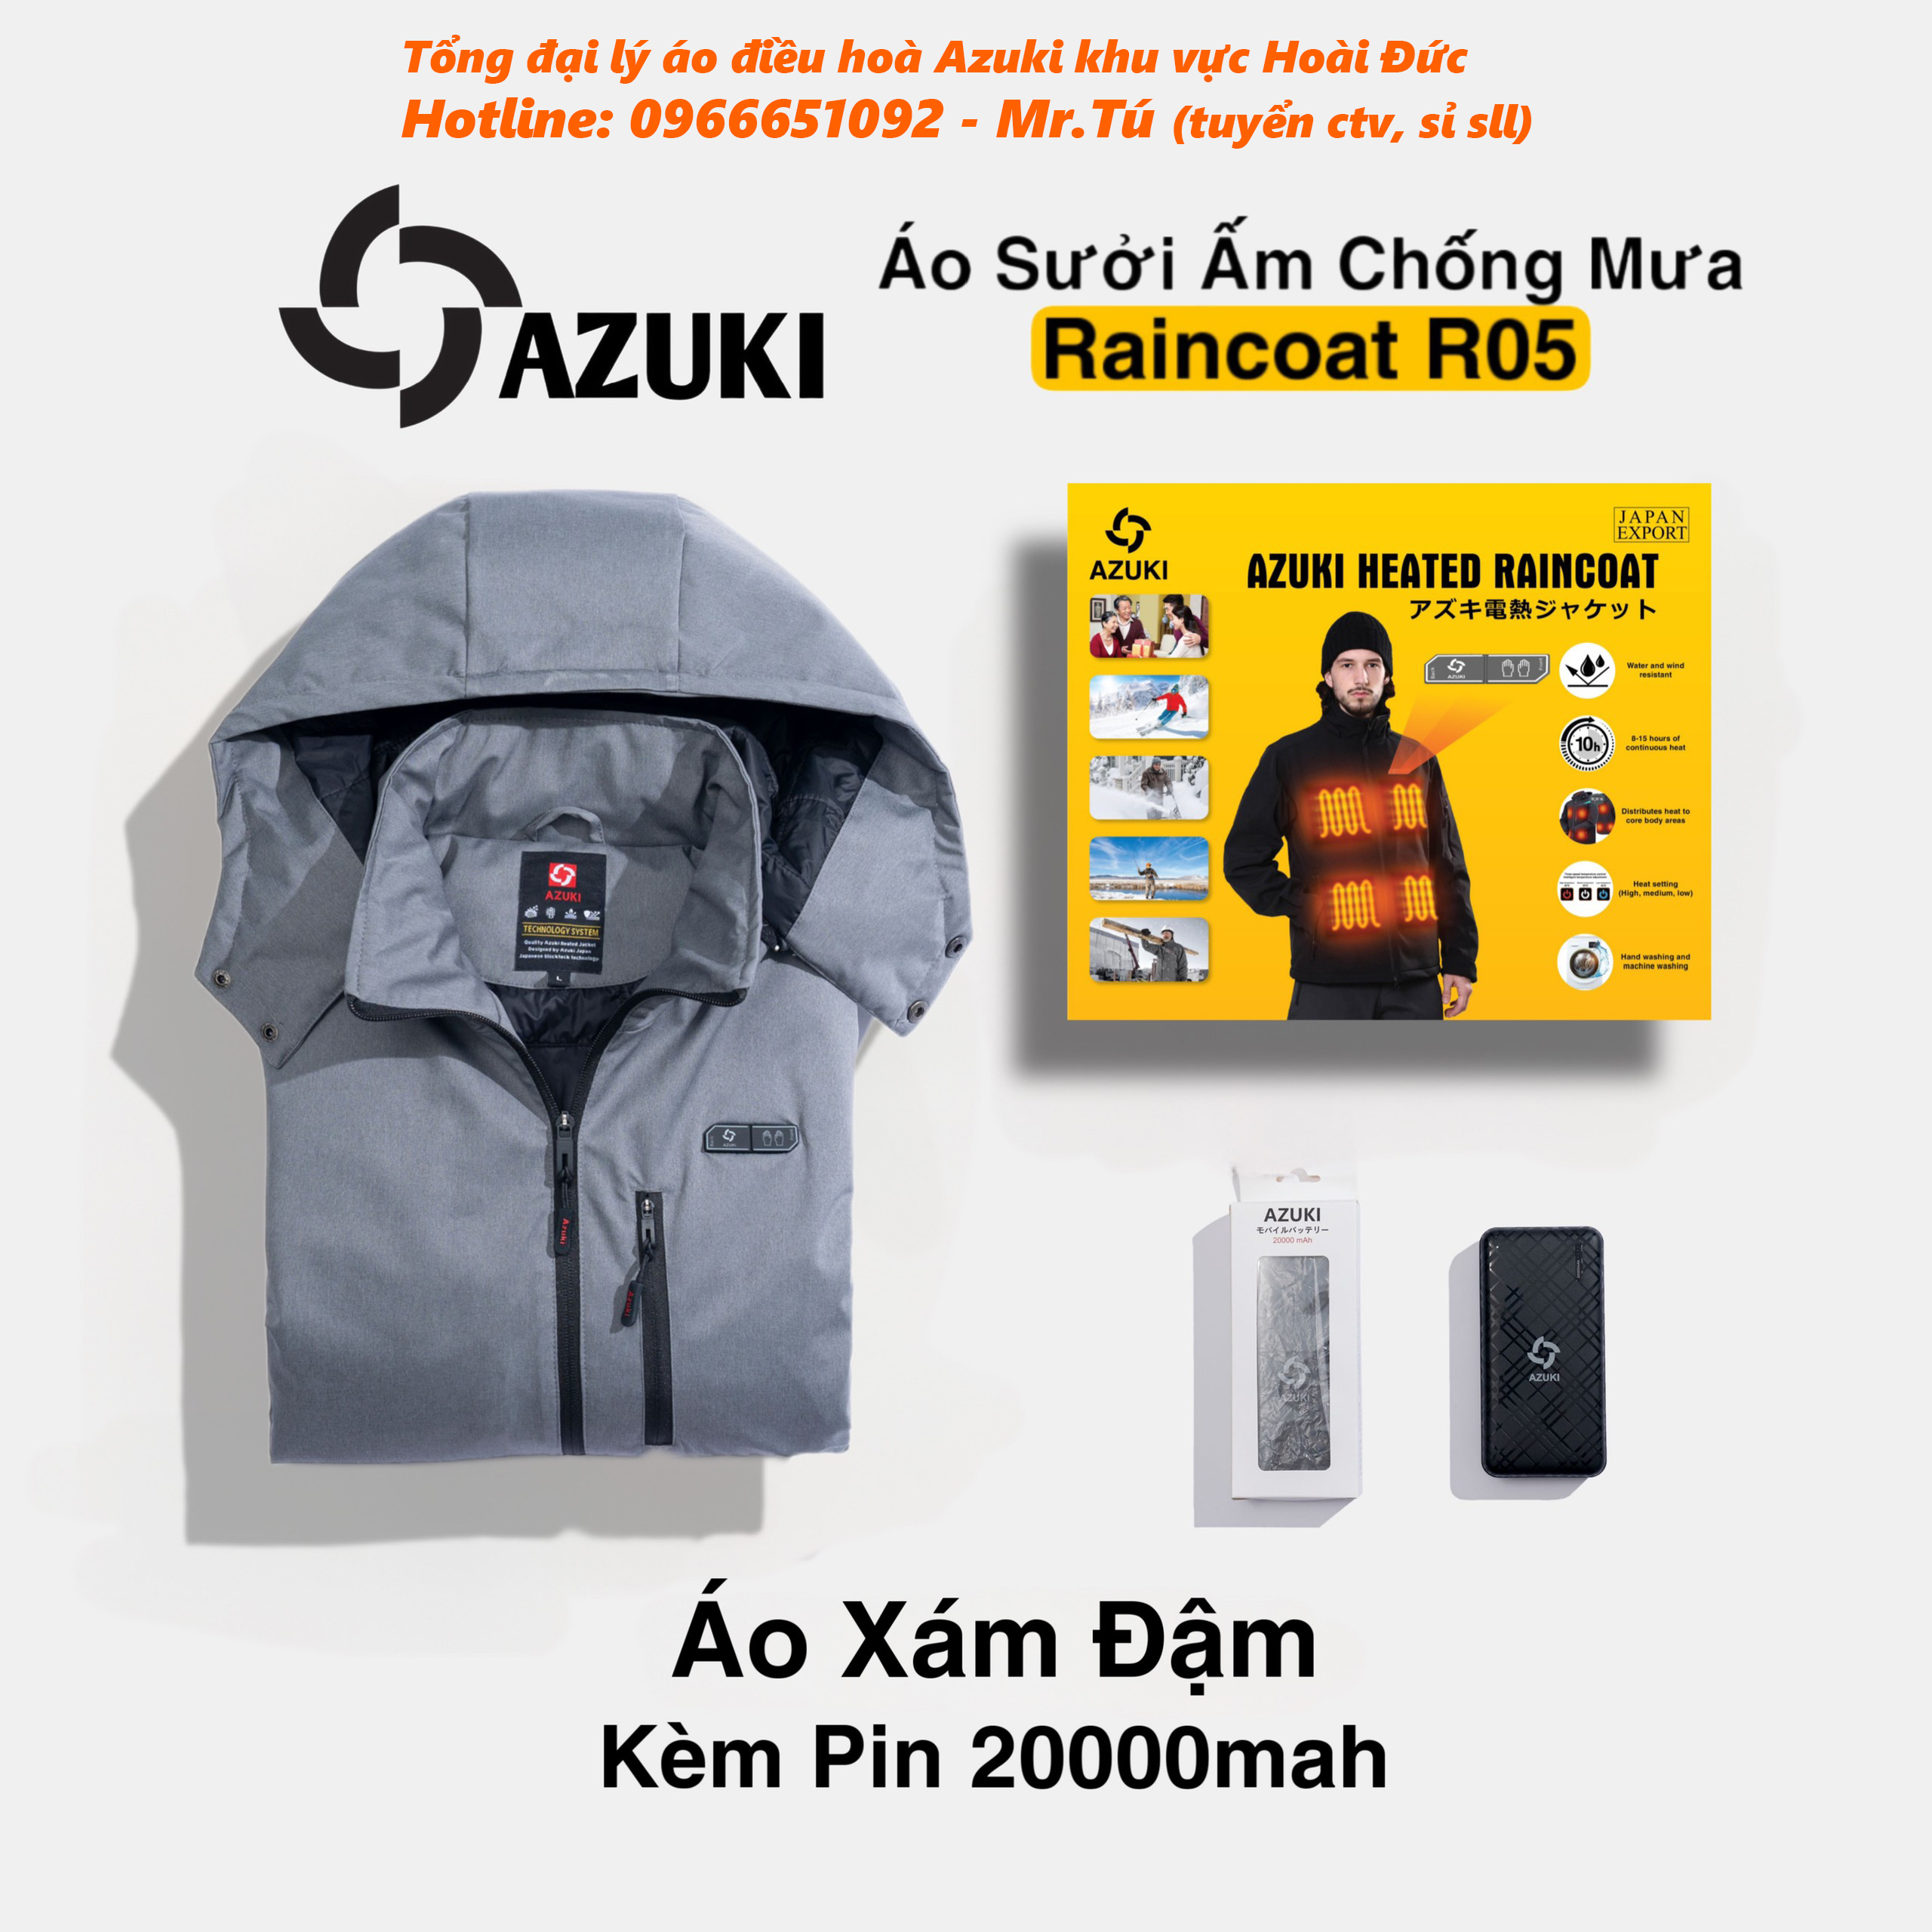 Combo Áo Điều Hoà Sưởi Ấm Chống Mưa Azuki Raincoat R05 + Pin 20000mah Mẫu Mới Nhất